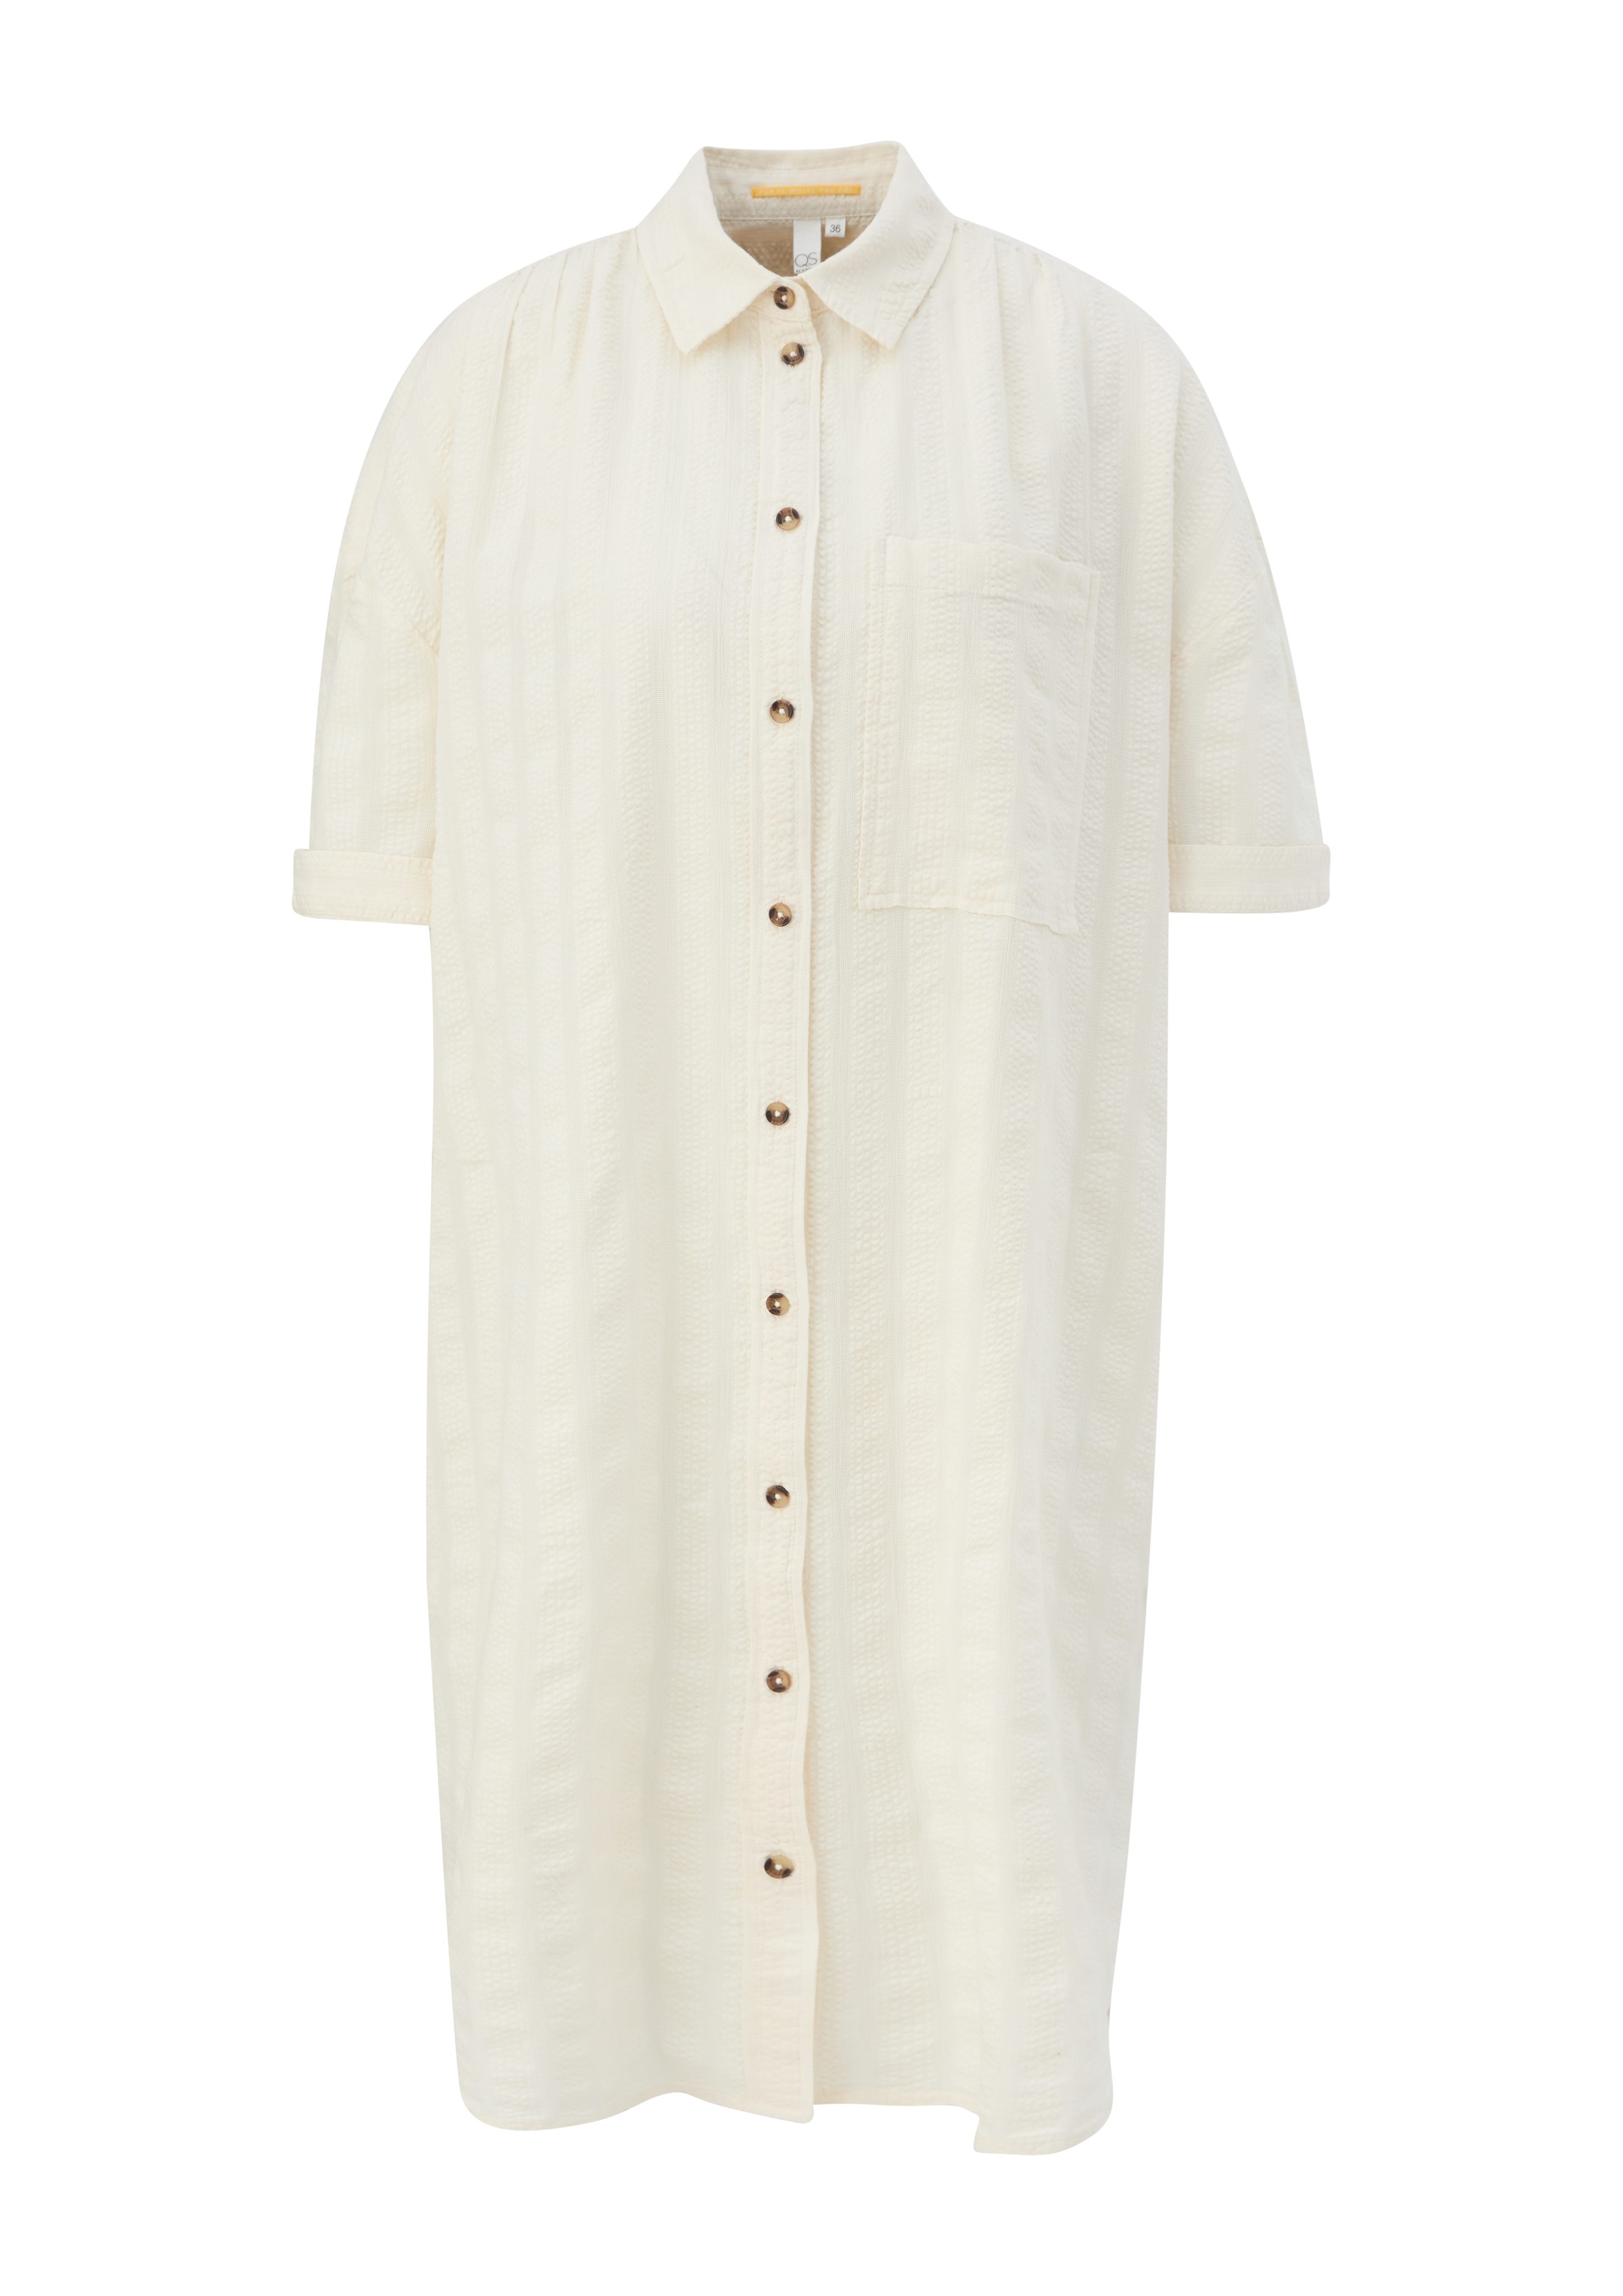 Blusenkleid aus QS sand helles Baumwolle Minikleid